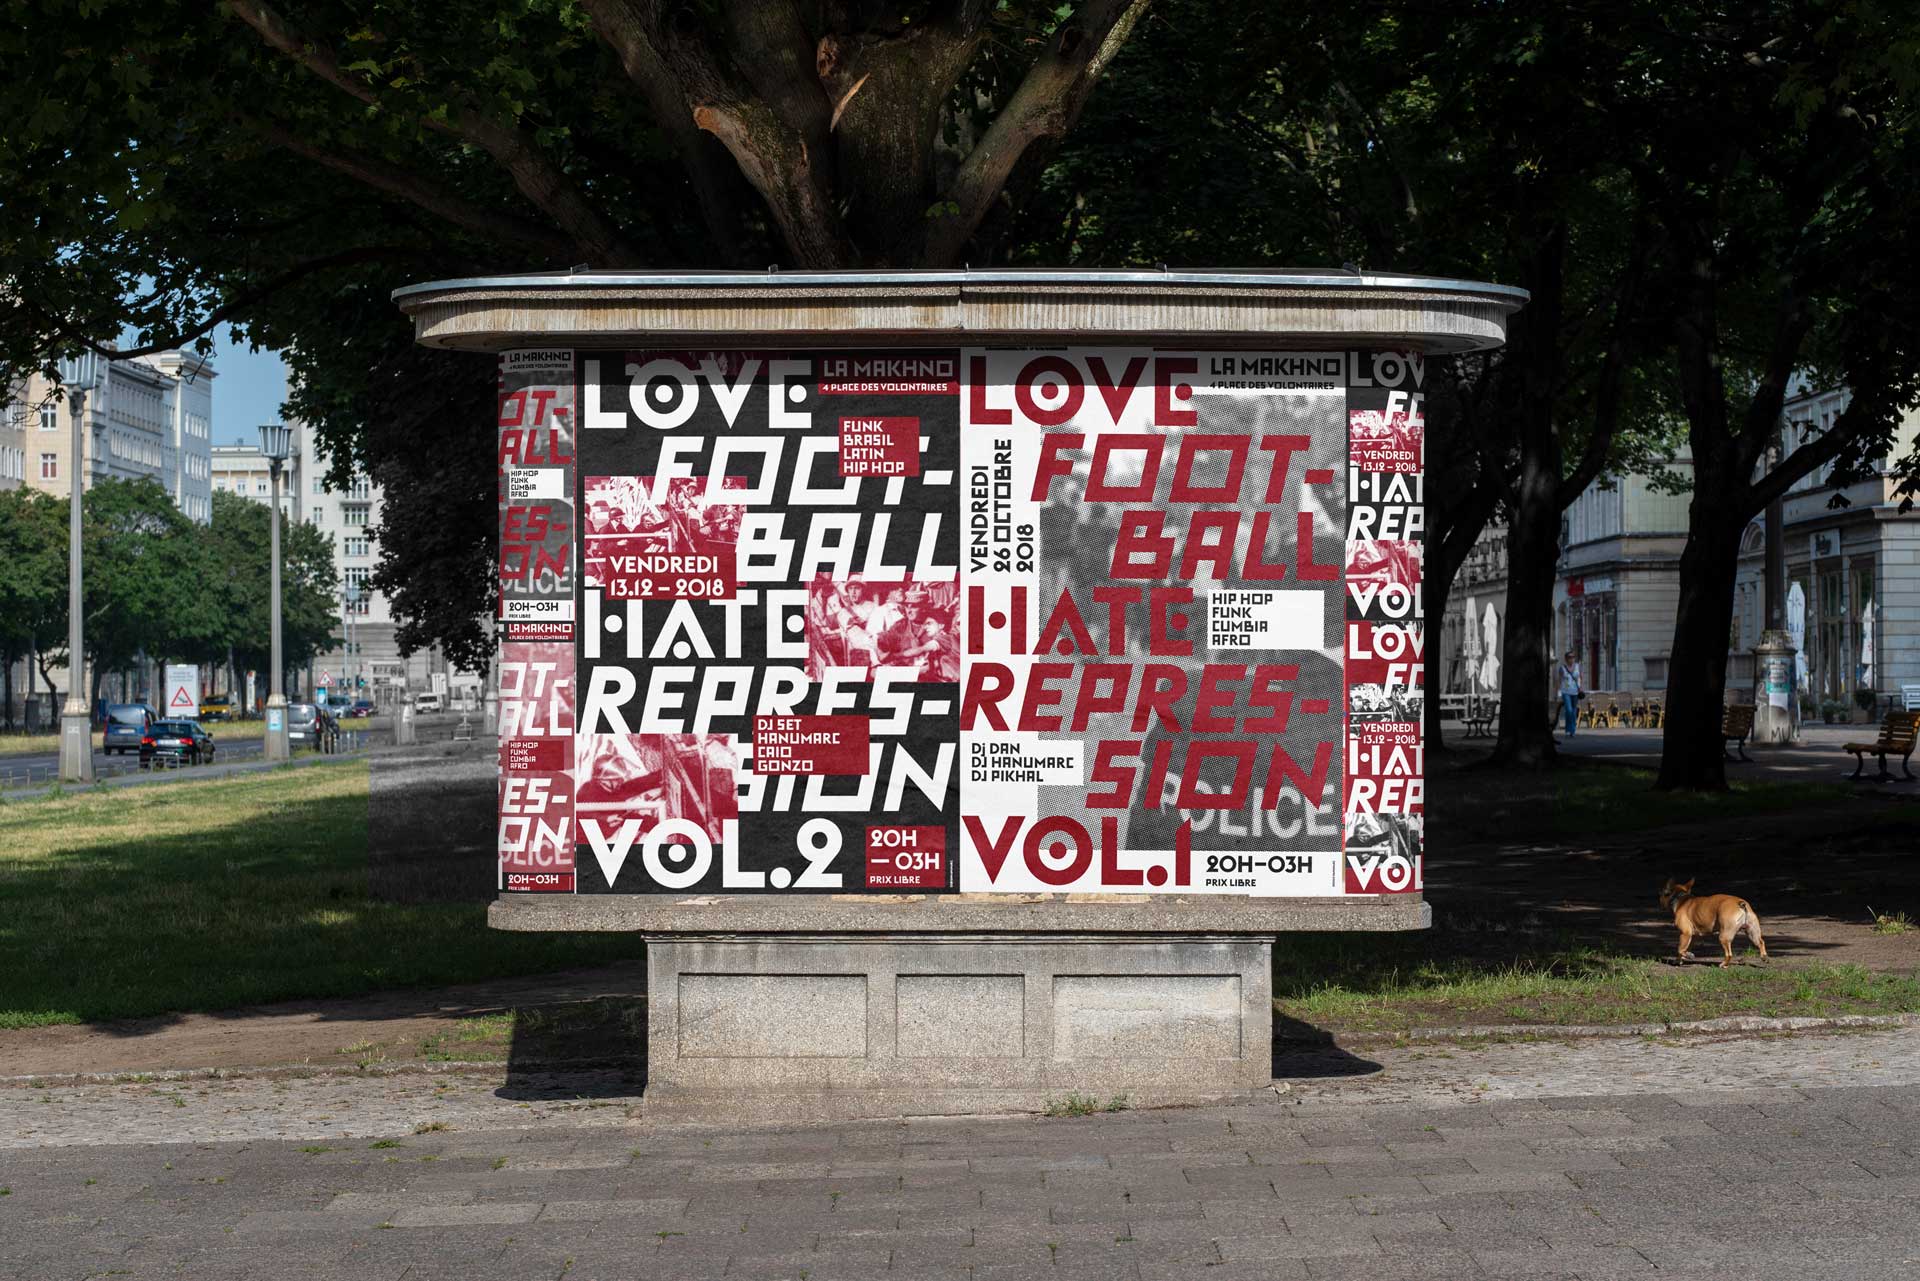 Love Football Hate Repression vol, 1 et vol 2. Affiches typographique et 2 couleurs culturelle pour une soirée de soutient